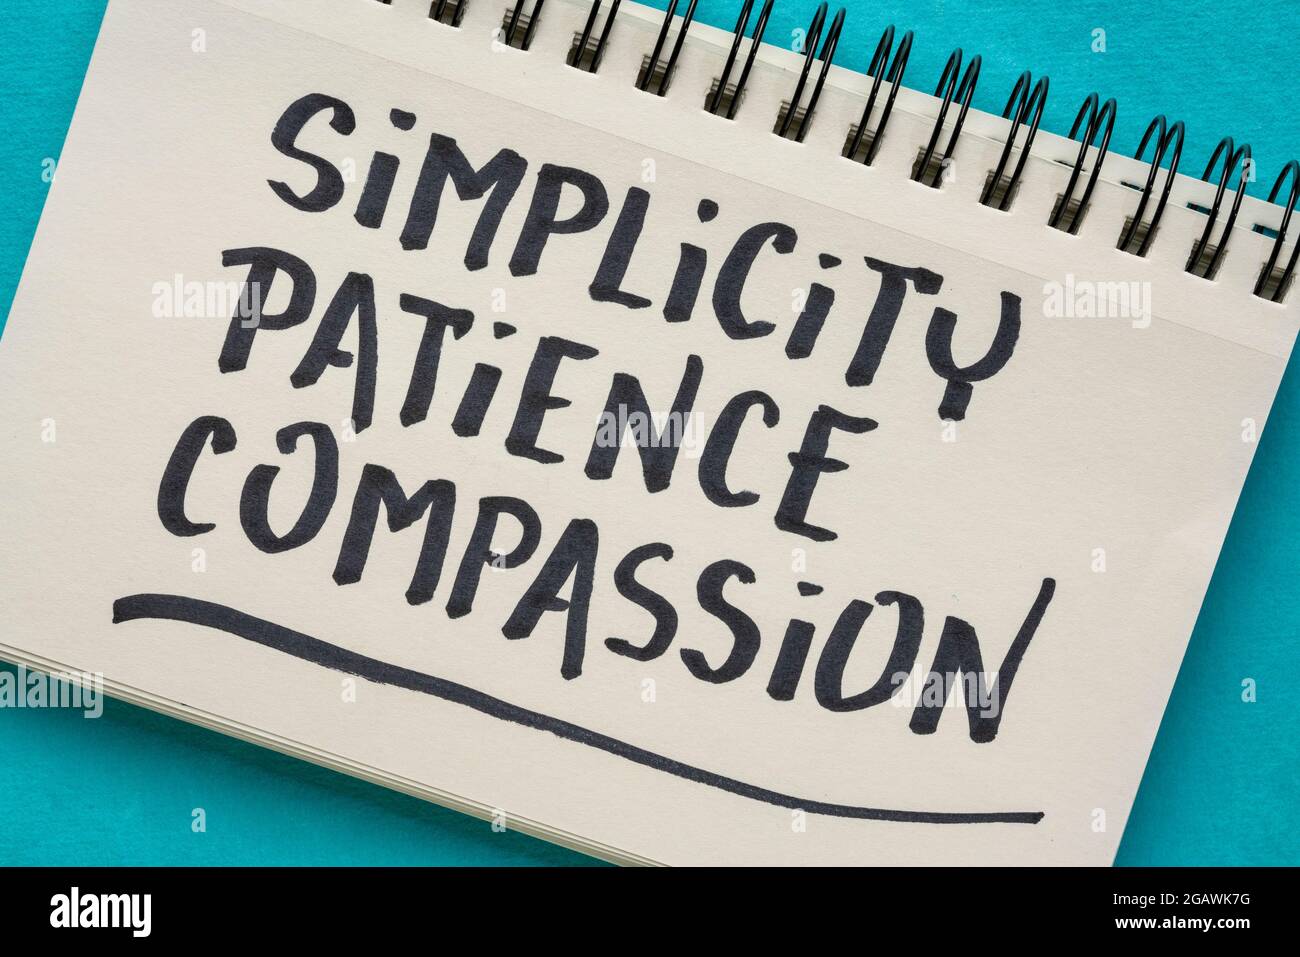 Semplicità, pazienza, compassione - tre parole da Buddha insegnamento - grafia in un notebook, concetto di saggezza spirituale Foto Stock